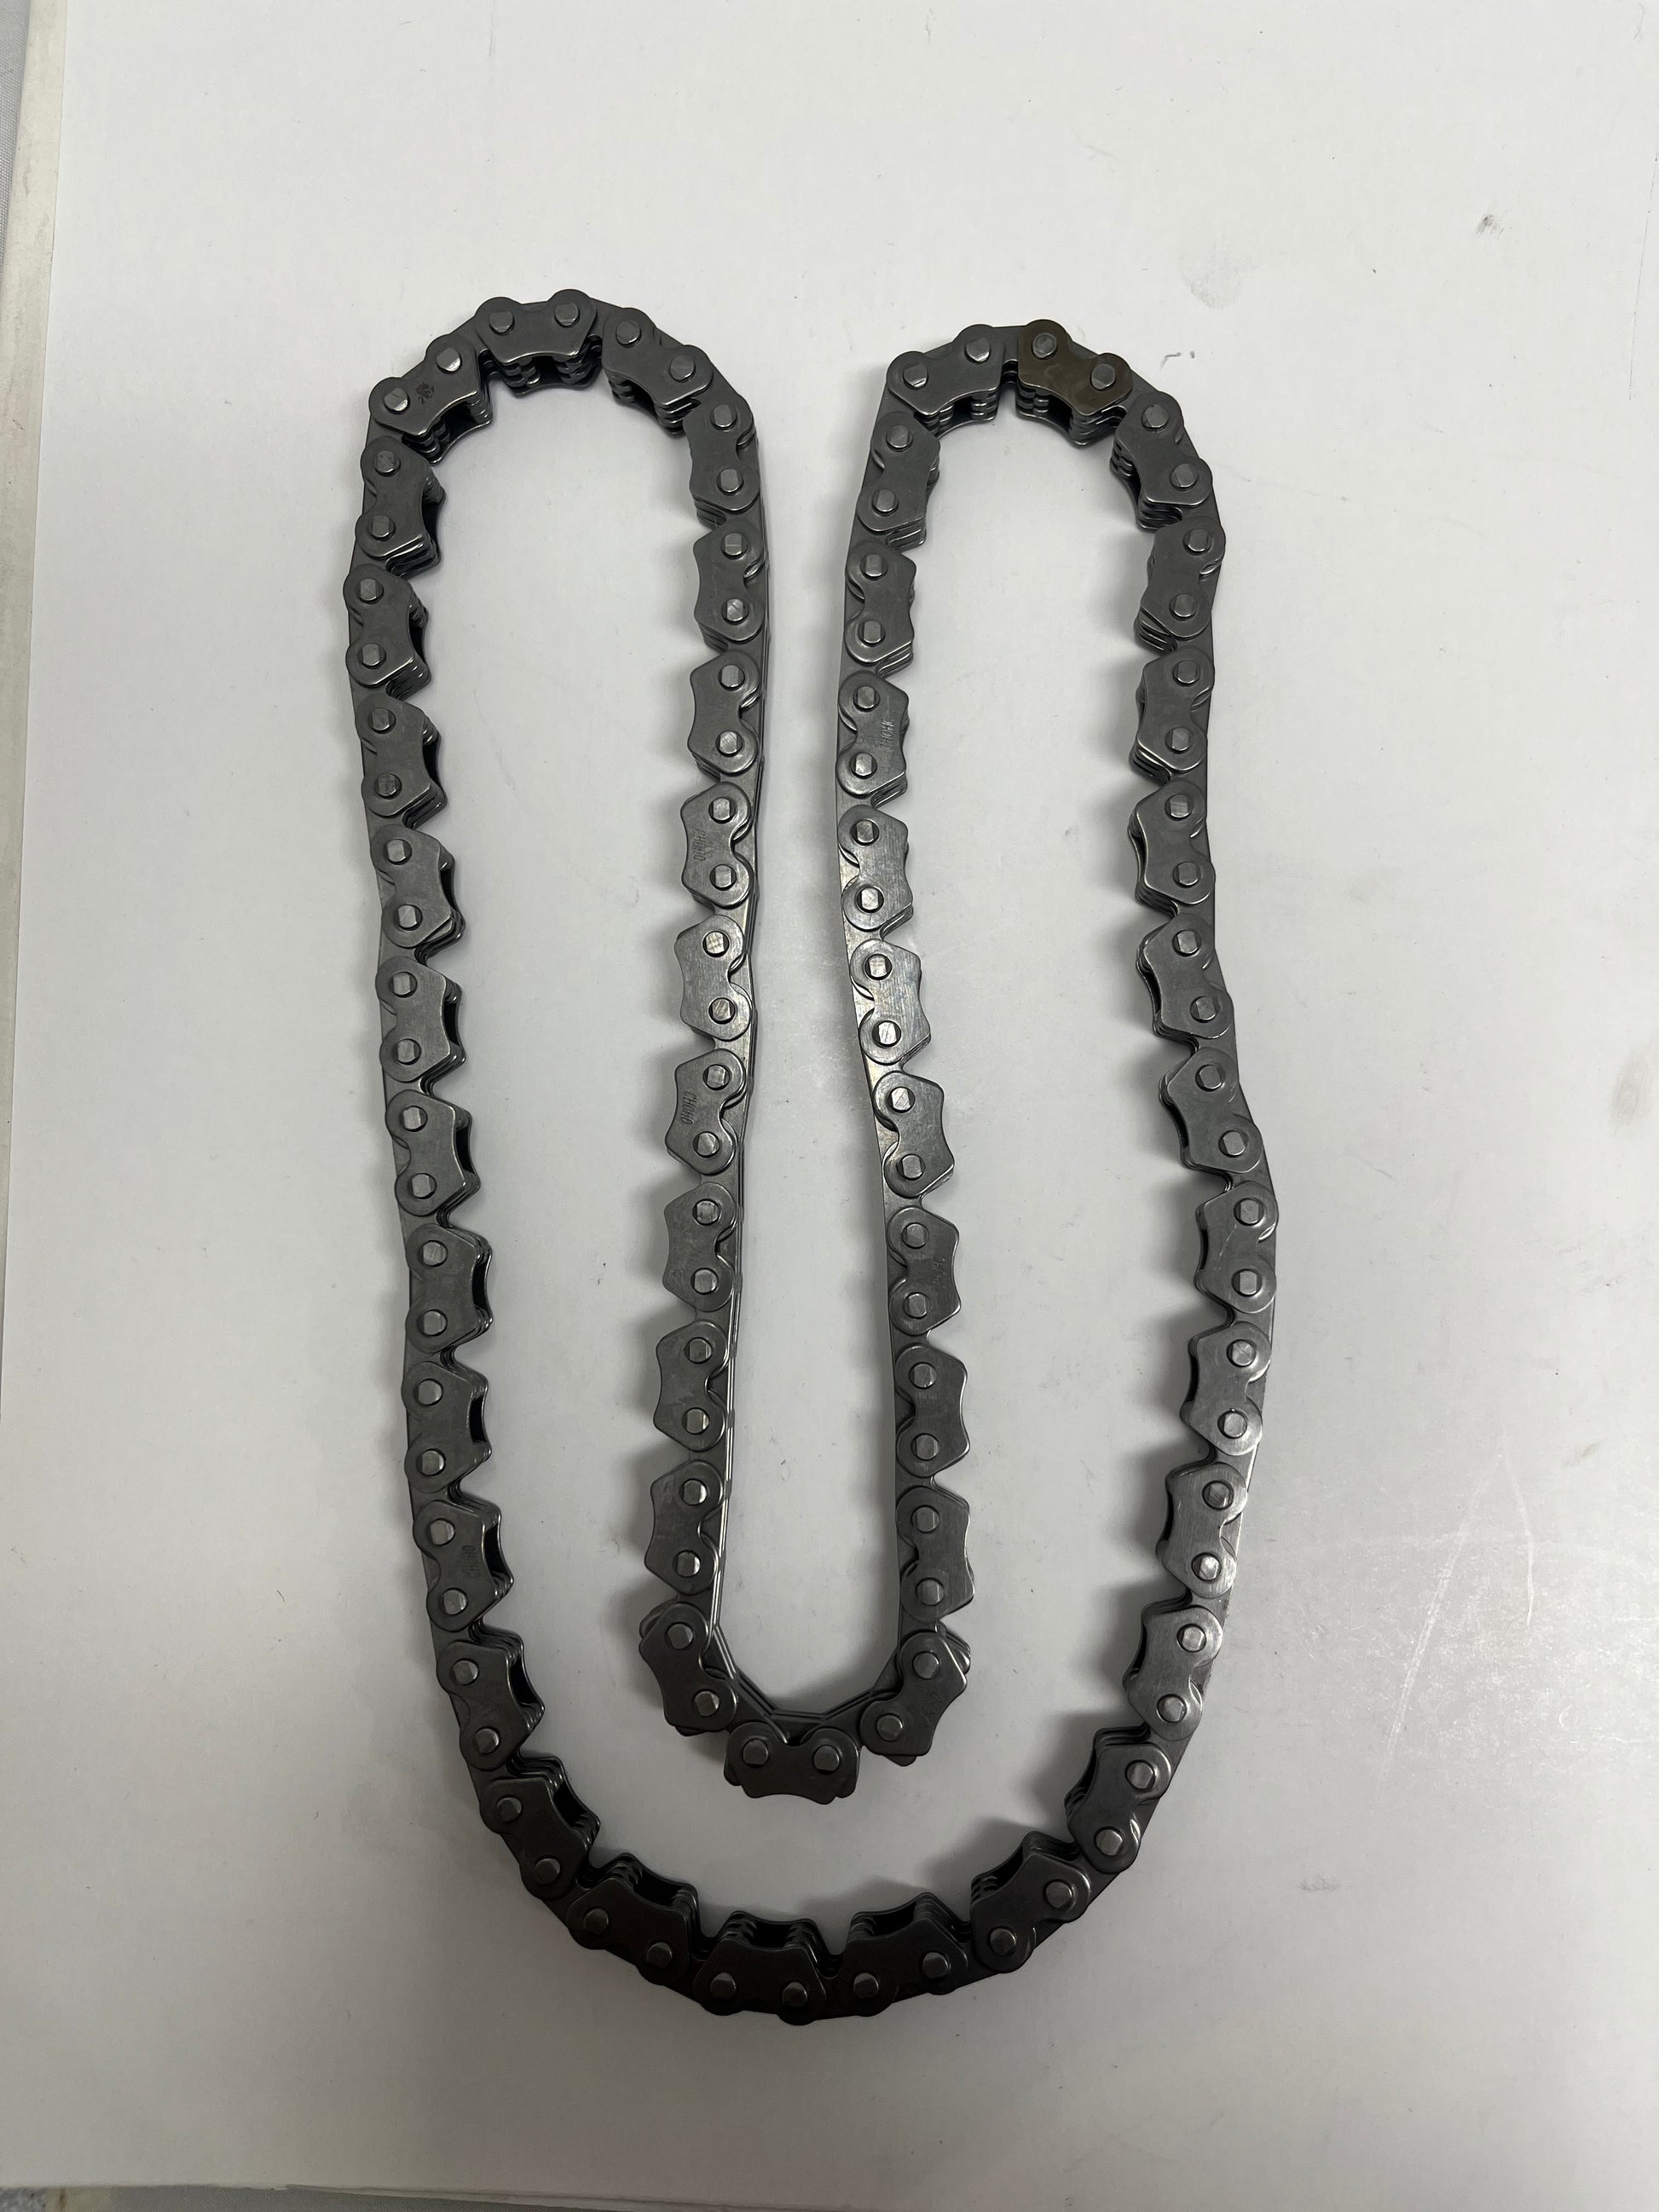 DF250RTS Chain for sale. Venom X22R chain parts.